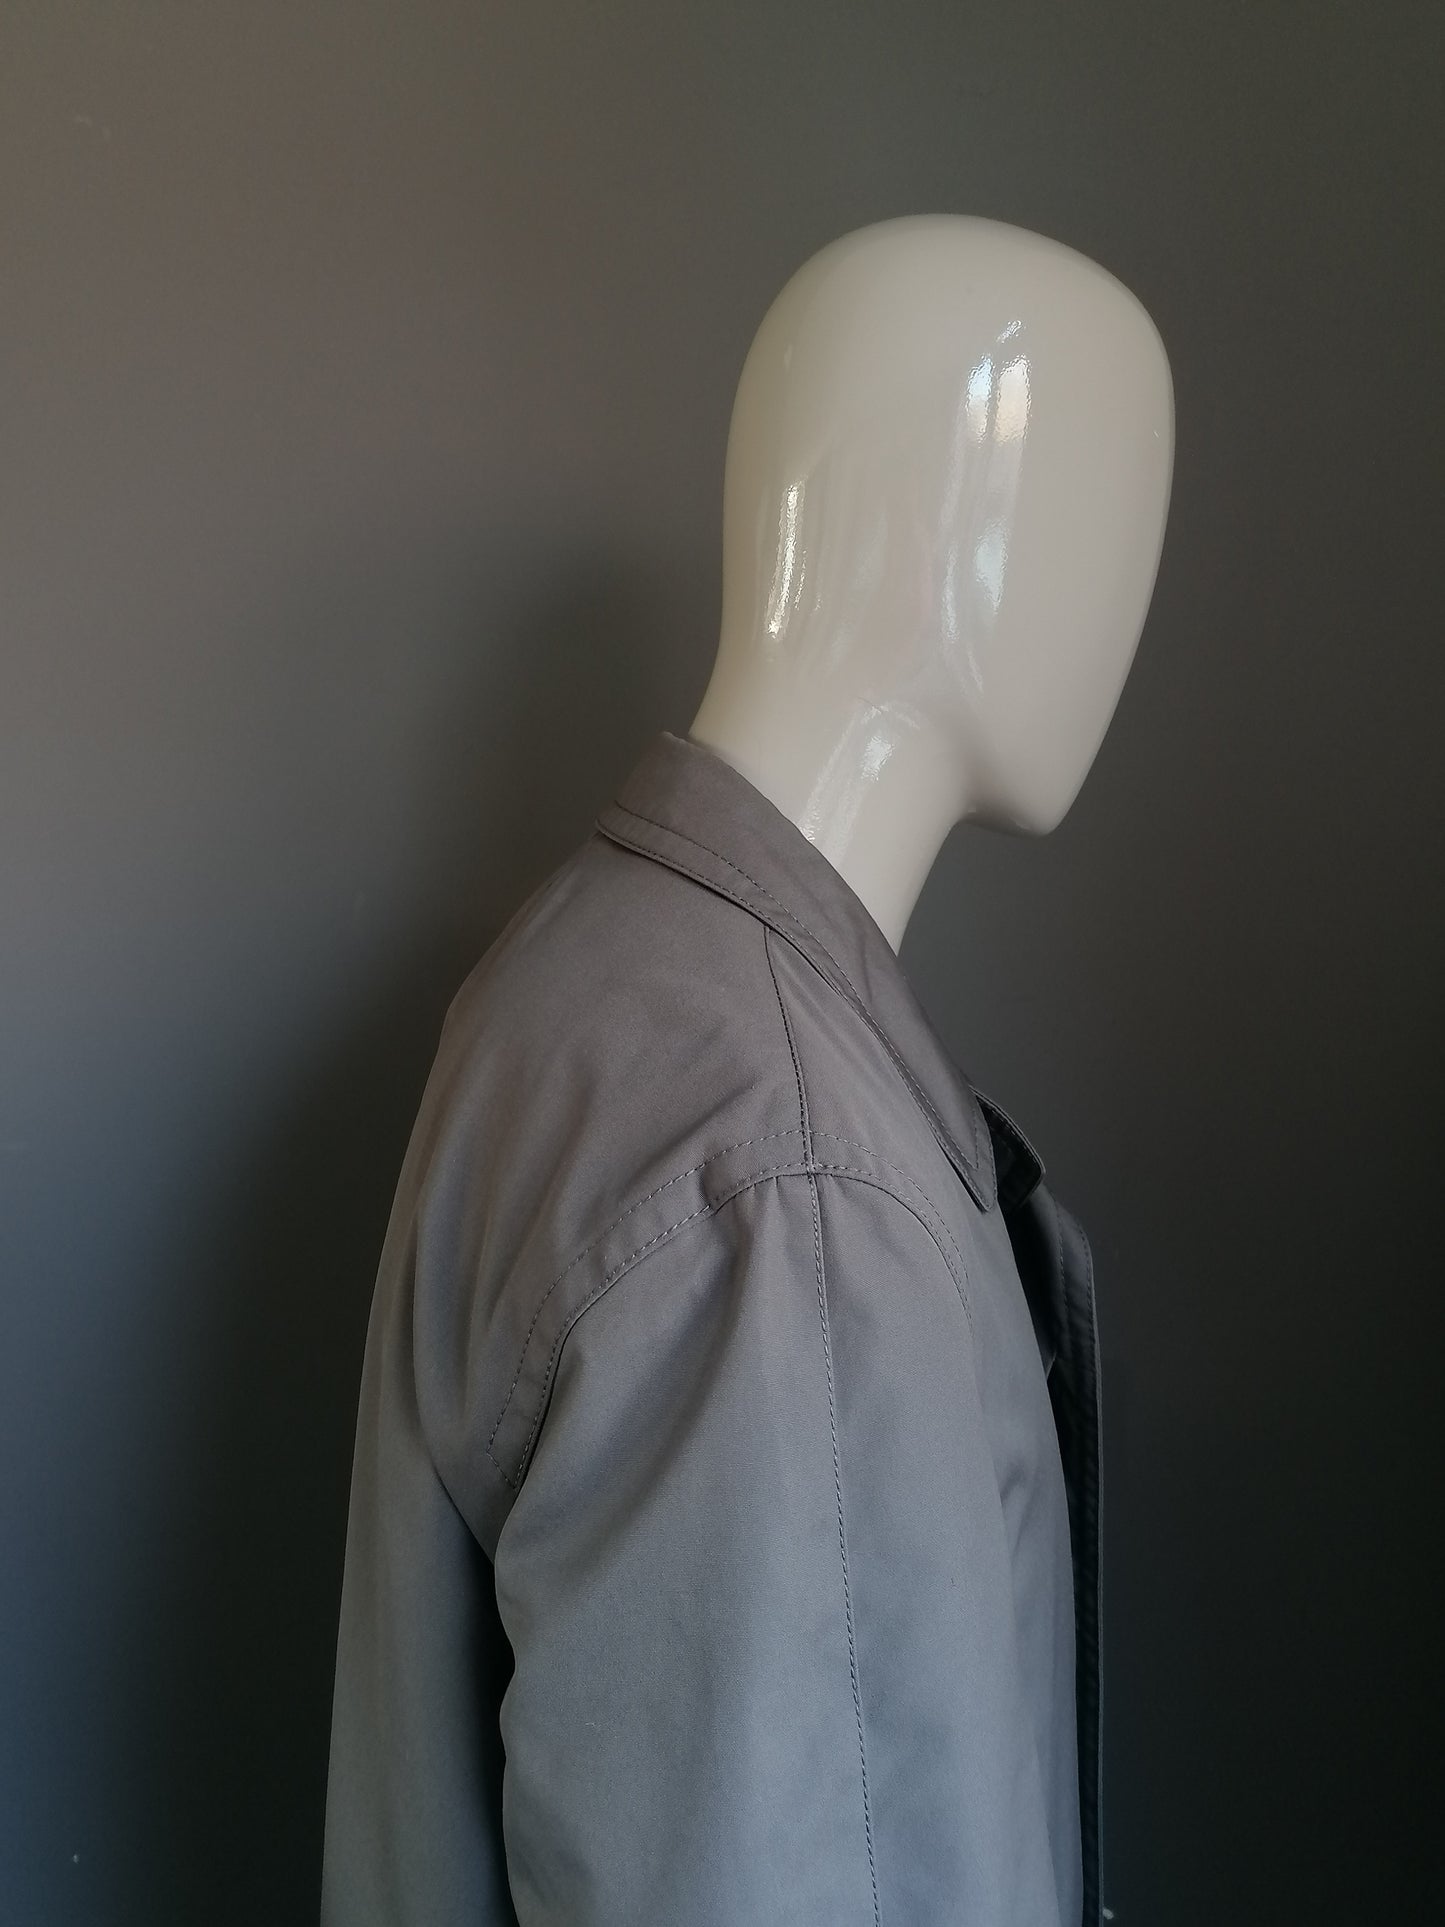 Vintage Werther Mantel / Halb -Länge -Jacke. Grau gefärbt. Größe 52 / L. Abnehmbare Wollfutter.